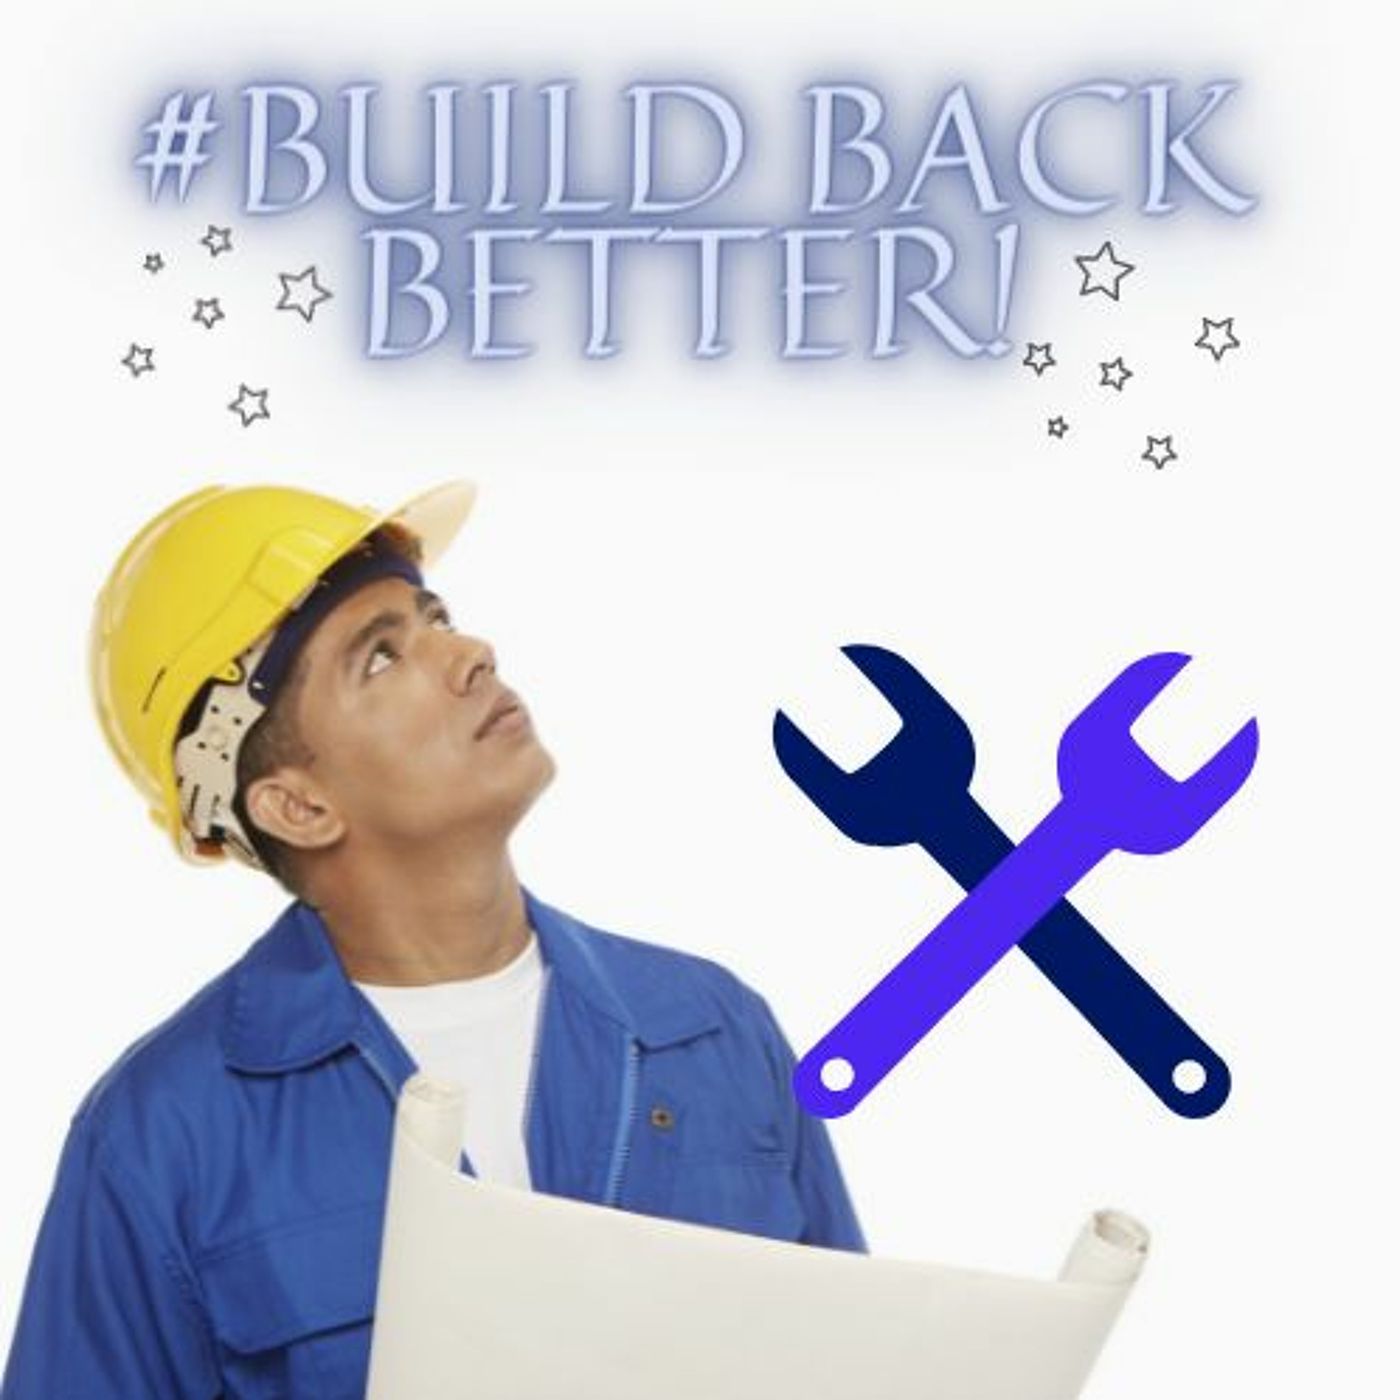 #BUILD BACK BETTER!